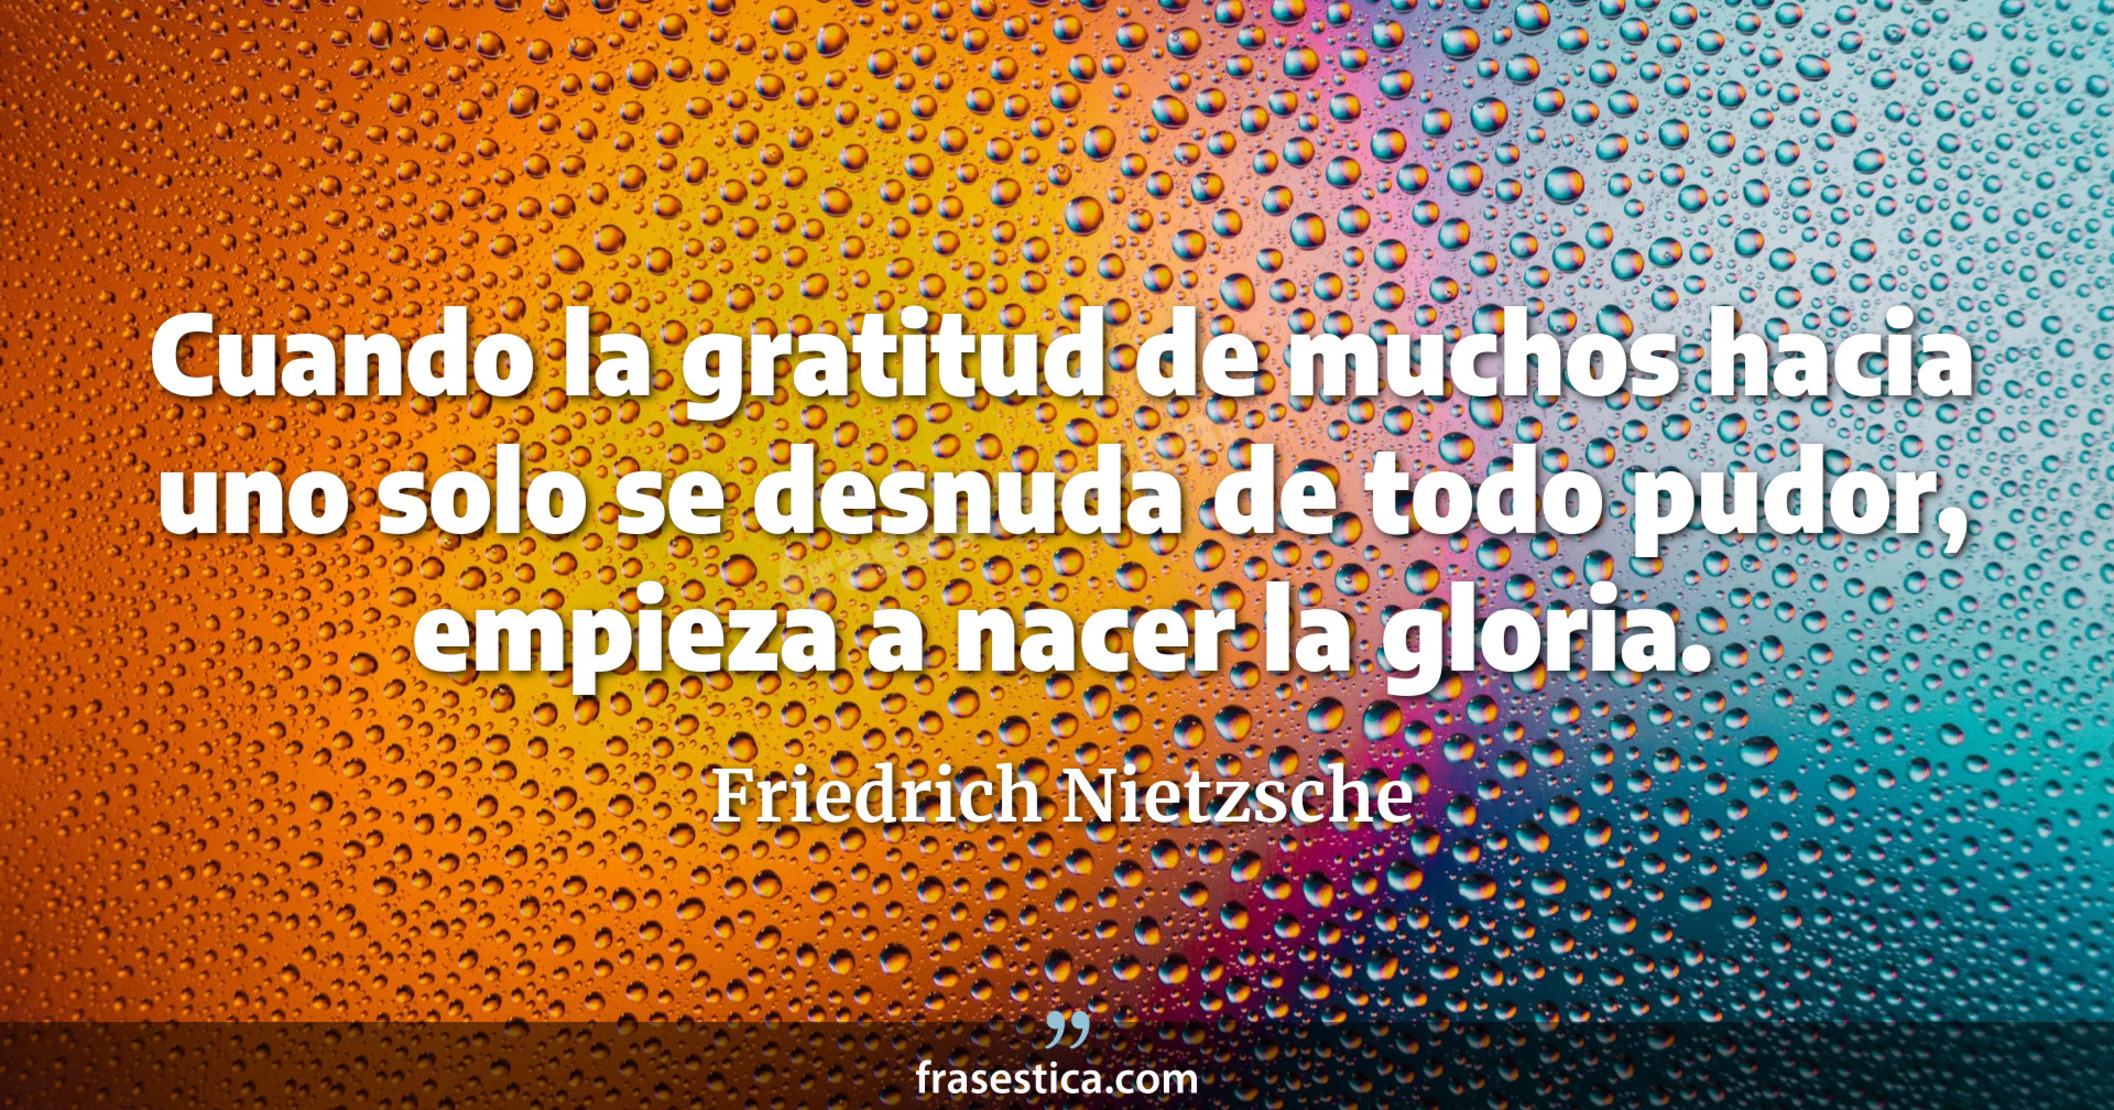 Cuando la gratitud de muchos hacia uno solo se desnuda de todo pudor, empieza a nacer la gloria. - Friedrich Nietzsche